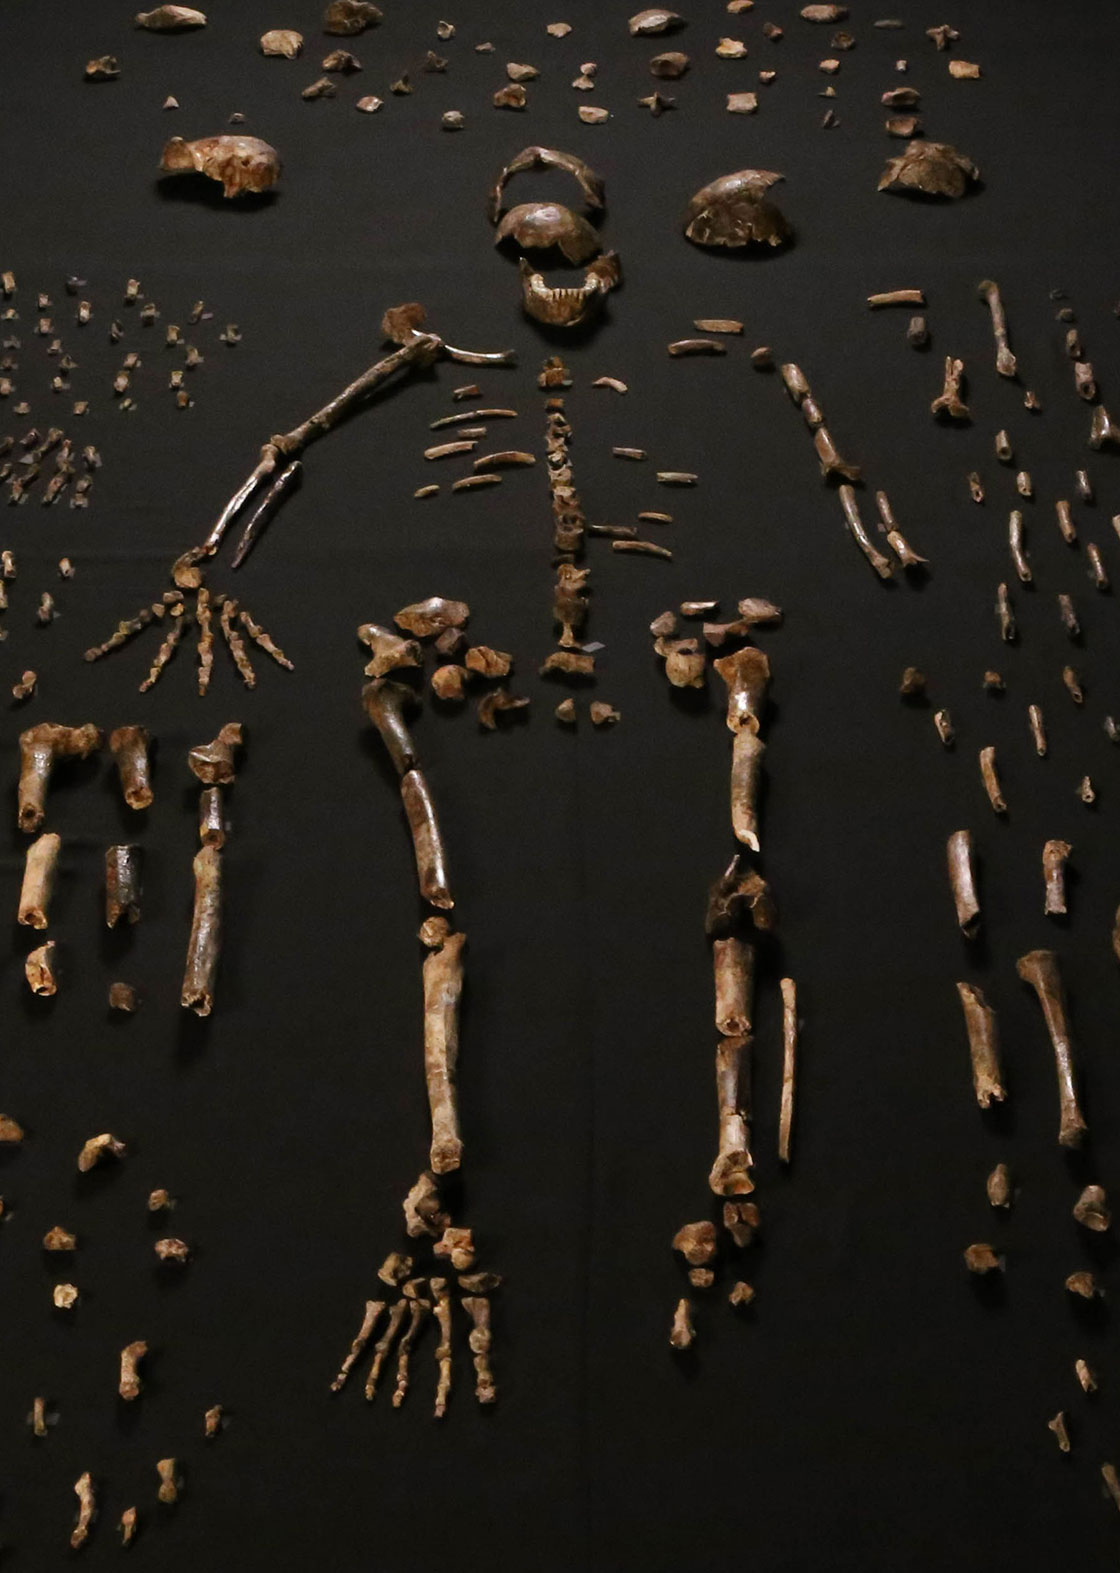 Homo naledi skeletal specimens by Lee Roger Berger research team